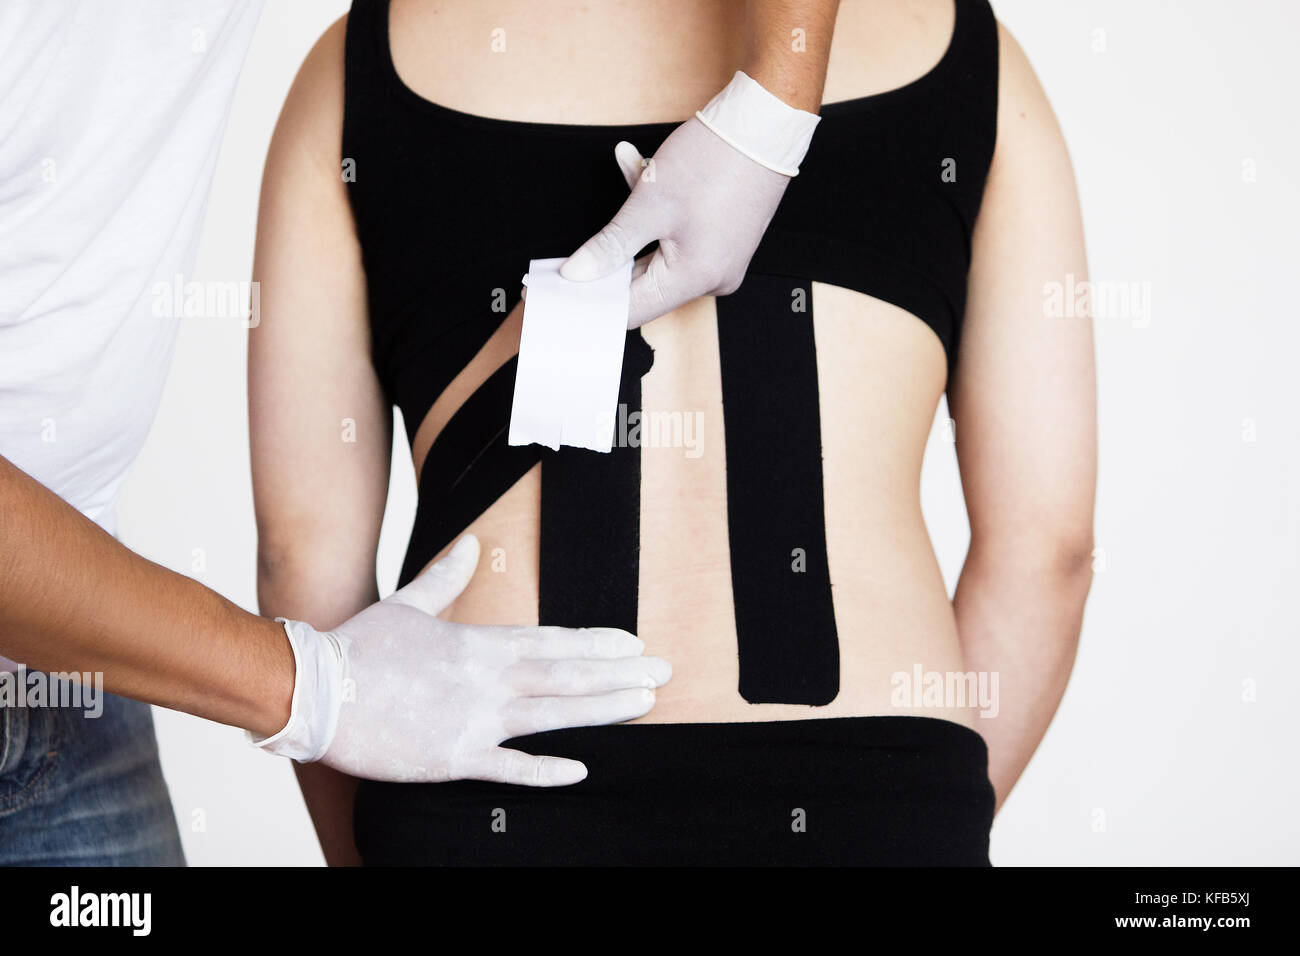 Un médecin physiothérapeute avec des gants l'application kinesio taping sur le dos d'une femme enceinte à réduire les maux de dos Banque D'Images